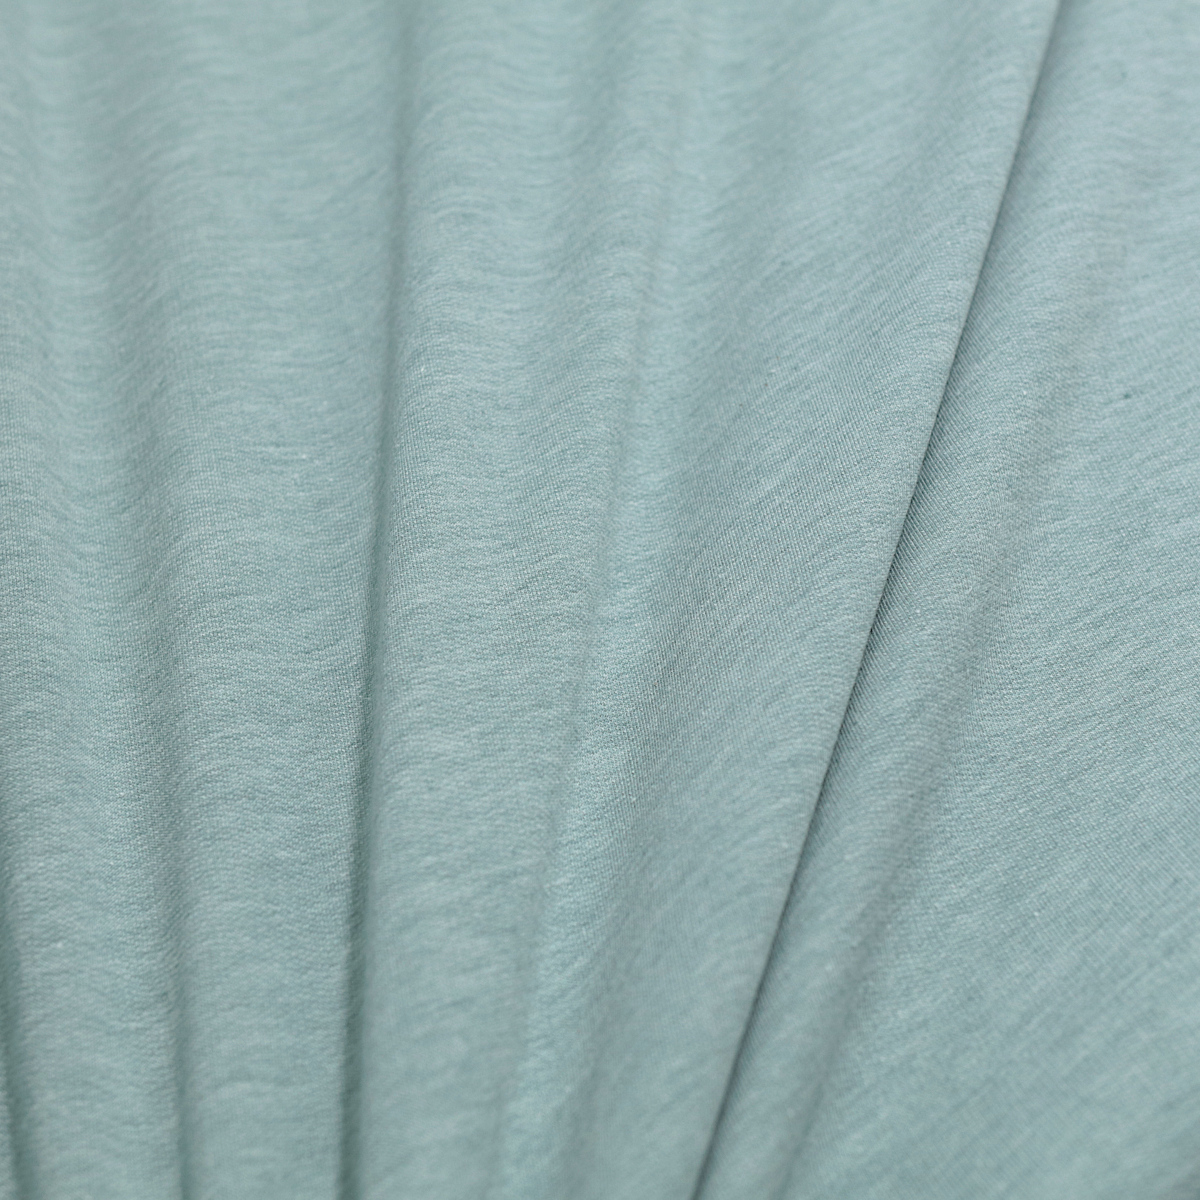 Leicht Mint Baumwoll Jersey als Bekleidungsstoff Meterware weicher Shirt Stoff